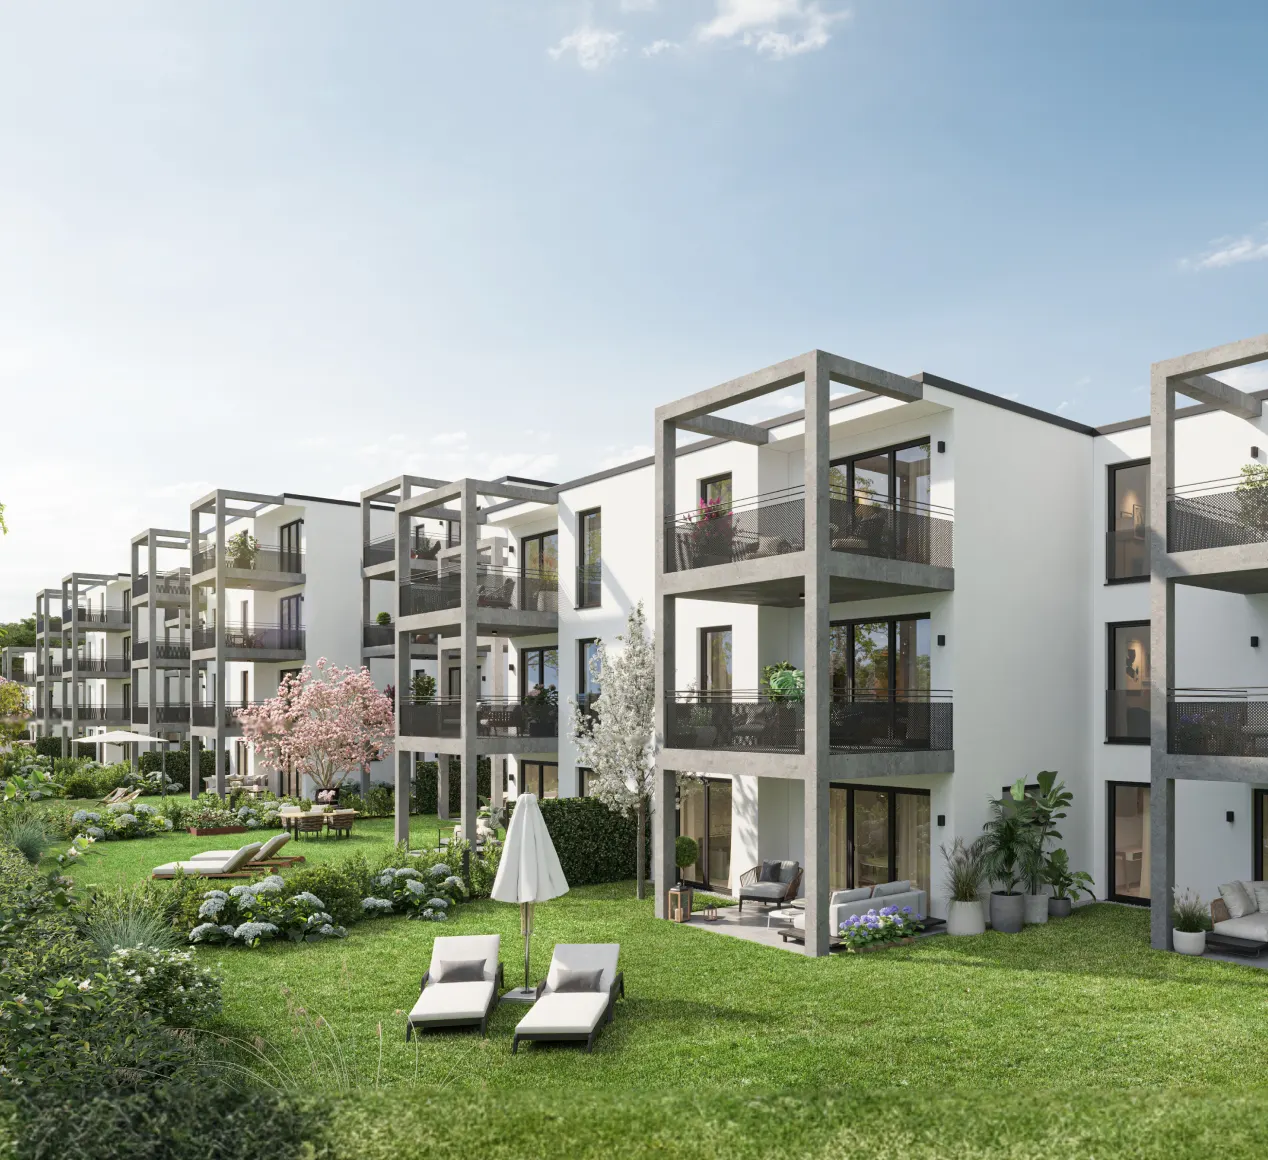 SCHICK Hausbau - GreenLiving in Ludersheim - Der ideale Spagat aus Stadt und Land – entdecken Sie Ihr neues Zuhause